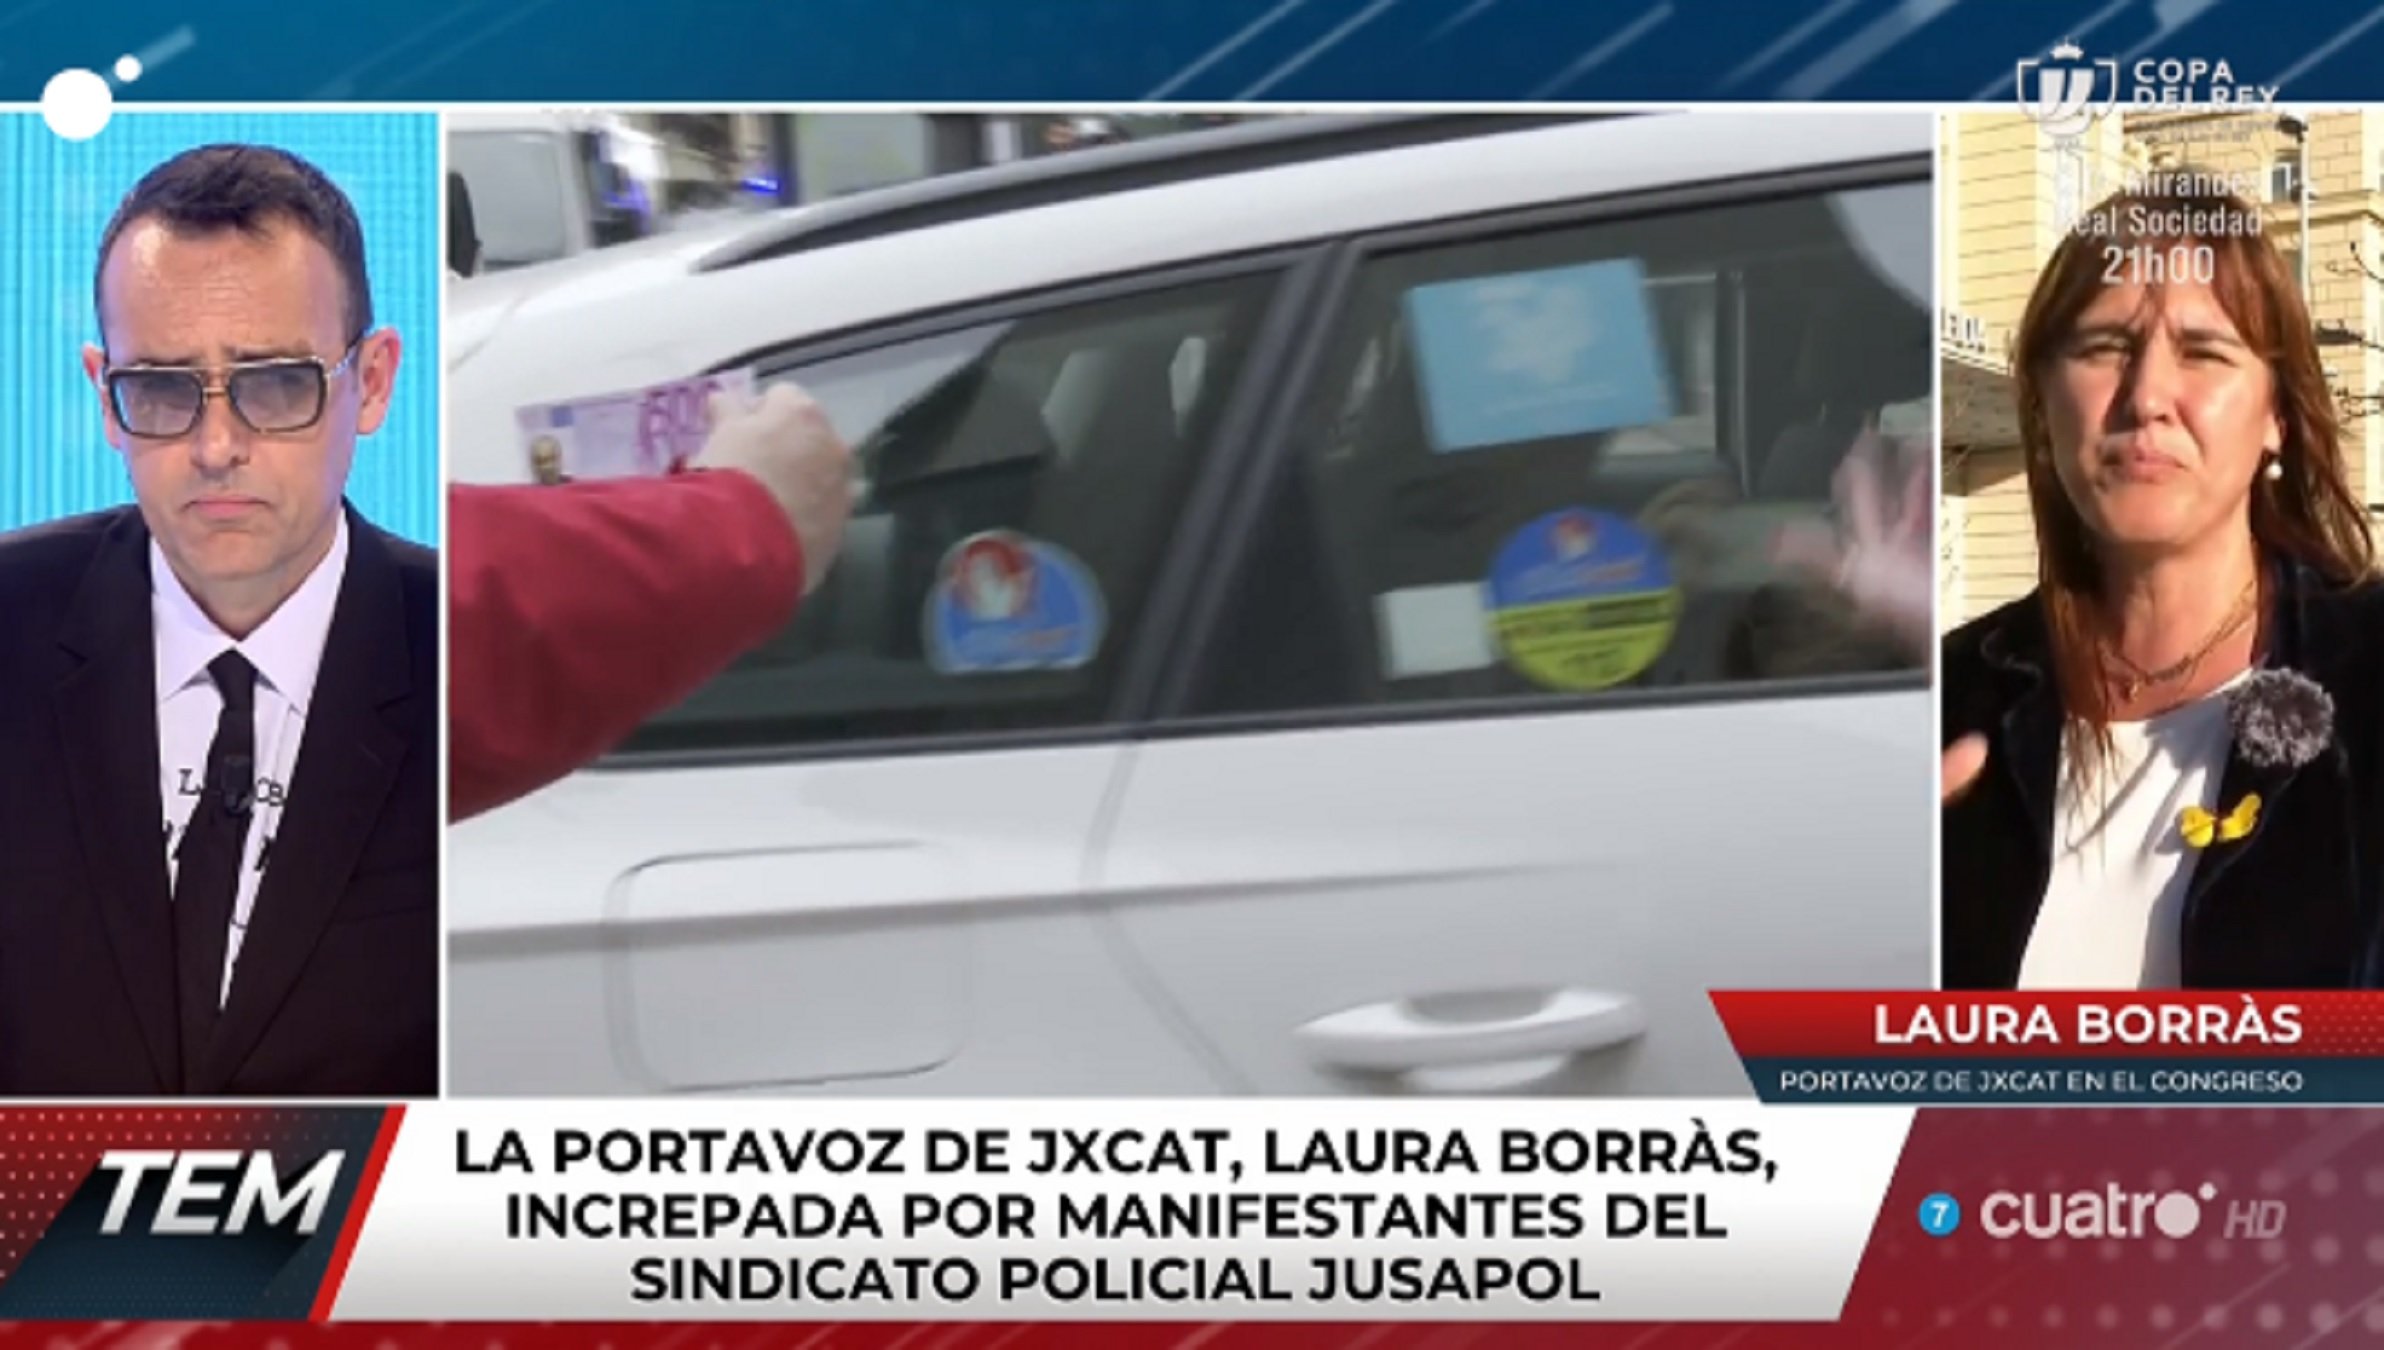 Tensión en TV: Laura Borràs se come a Risto después de asediarla Jusapol